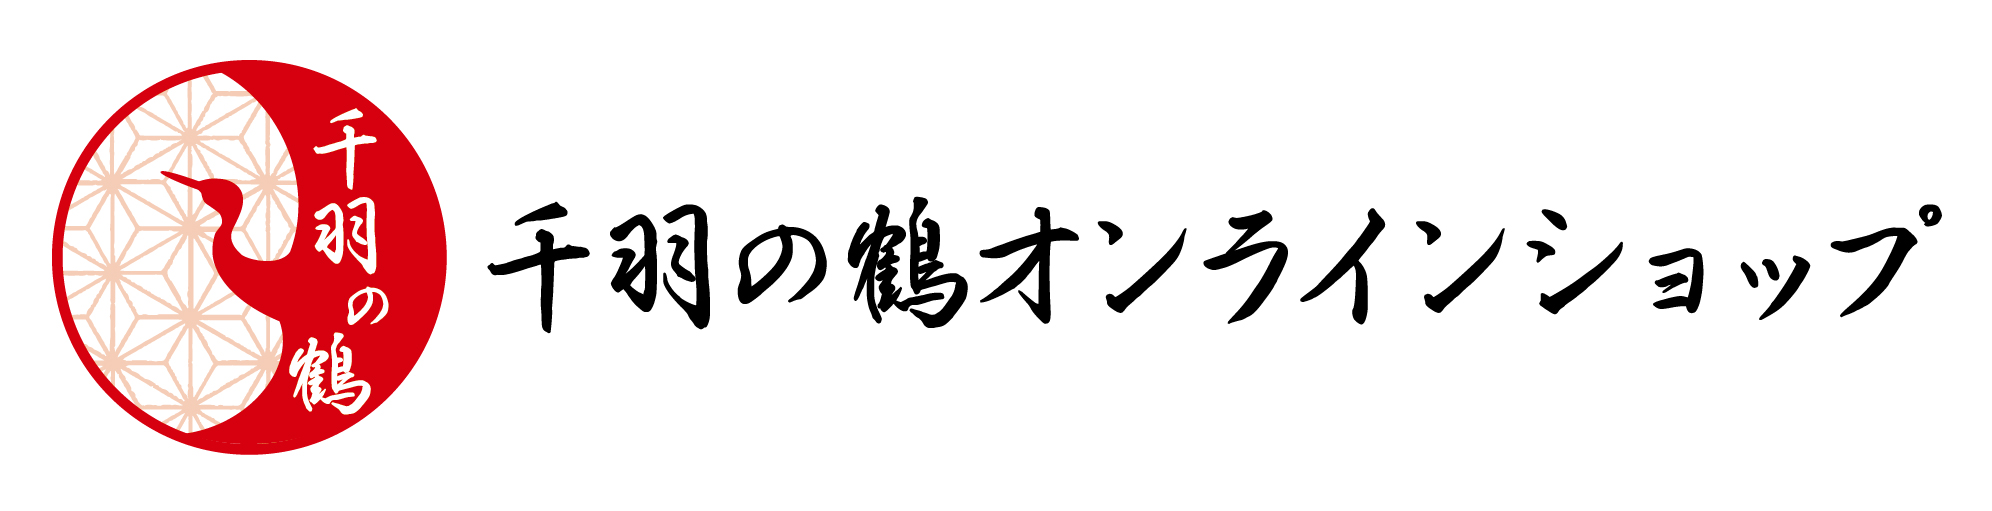 千羽の鶴オンラインショップ ロゴ